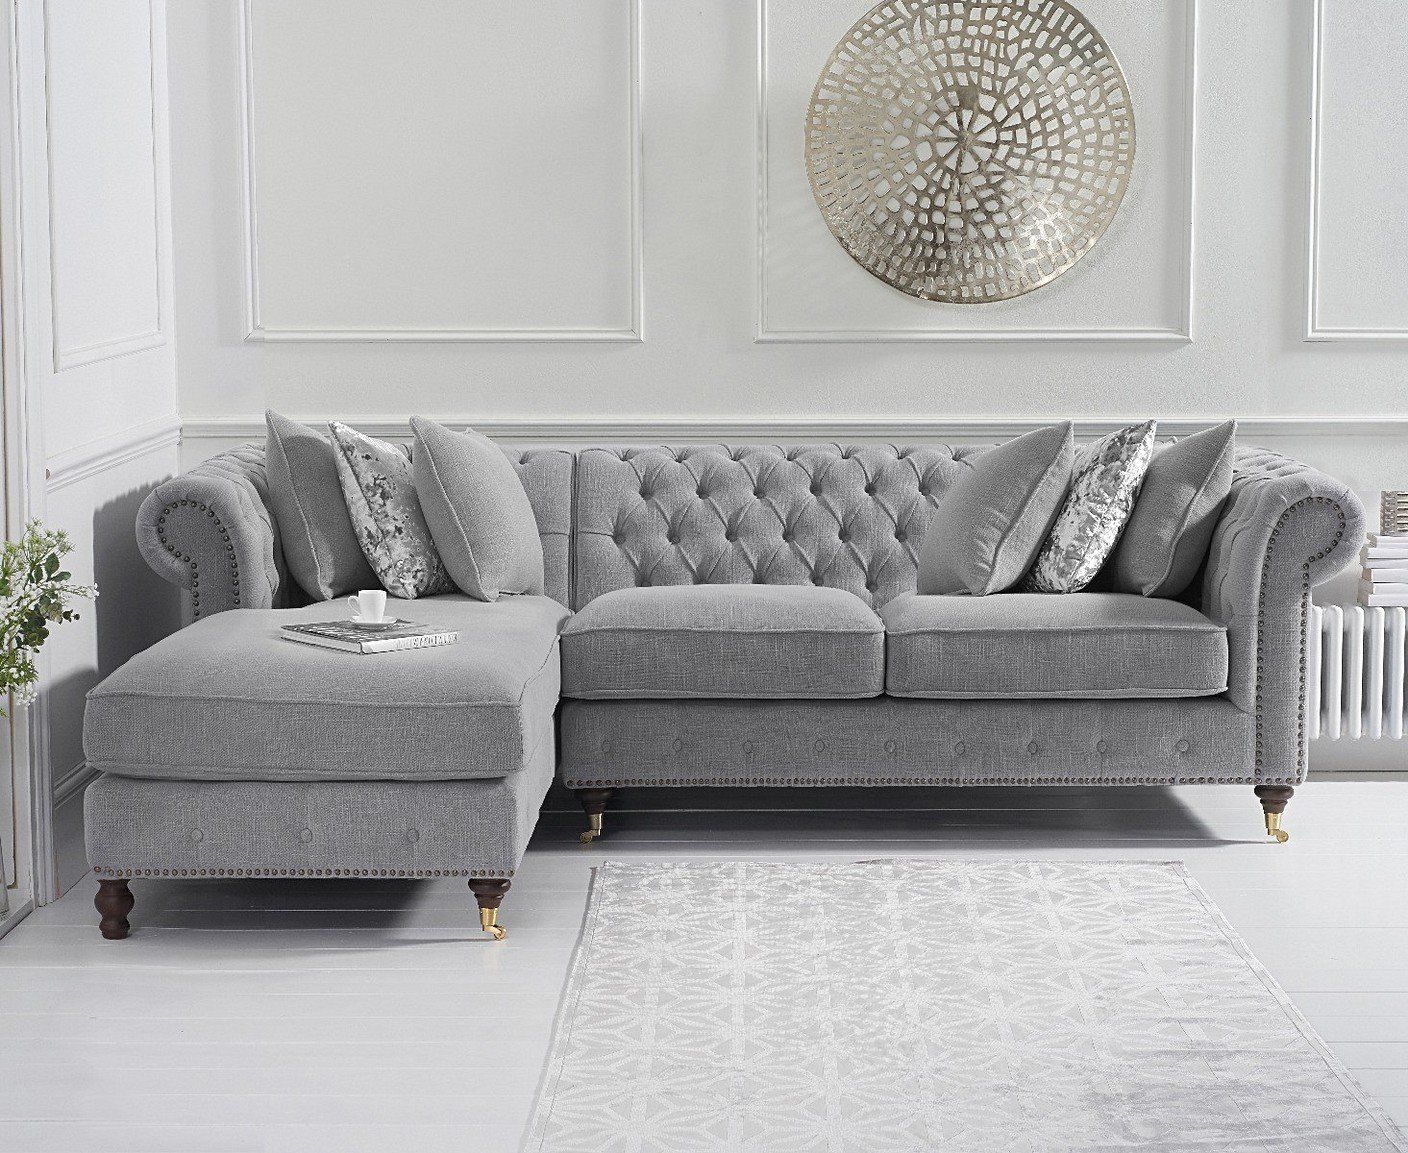 Fiona Medium Grey Linen Left Facing Chaise Sofa Regarding Gray Linen Sofas (Gallery 4 of 20)